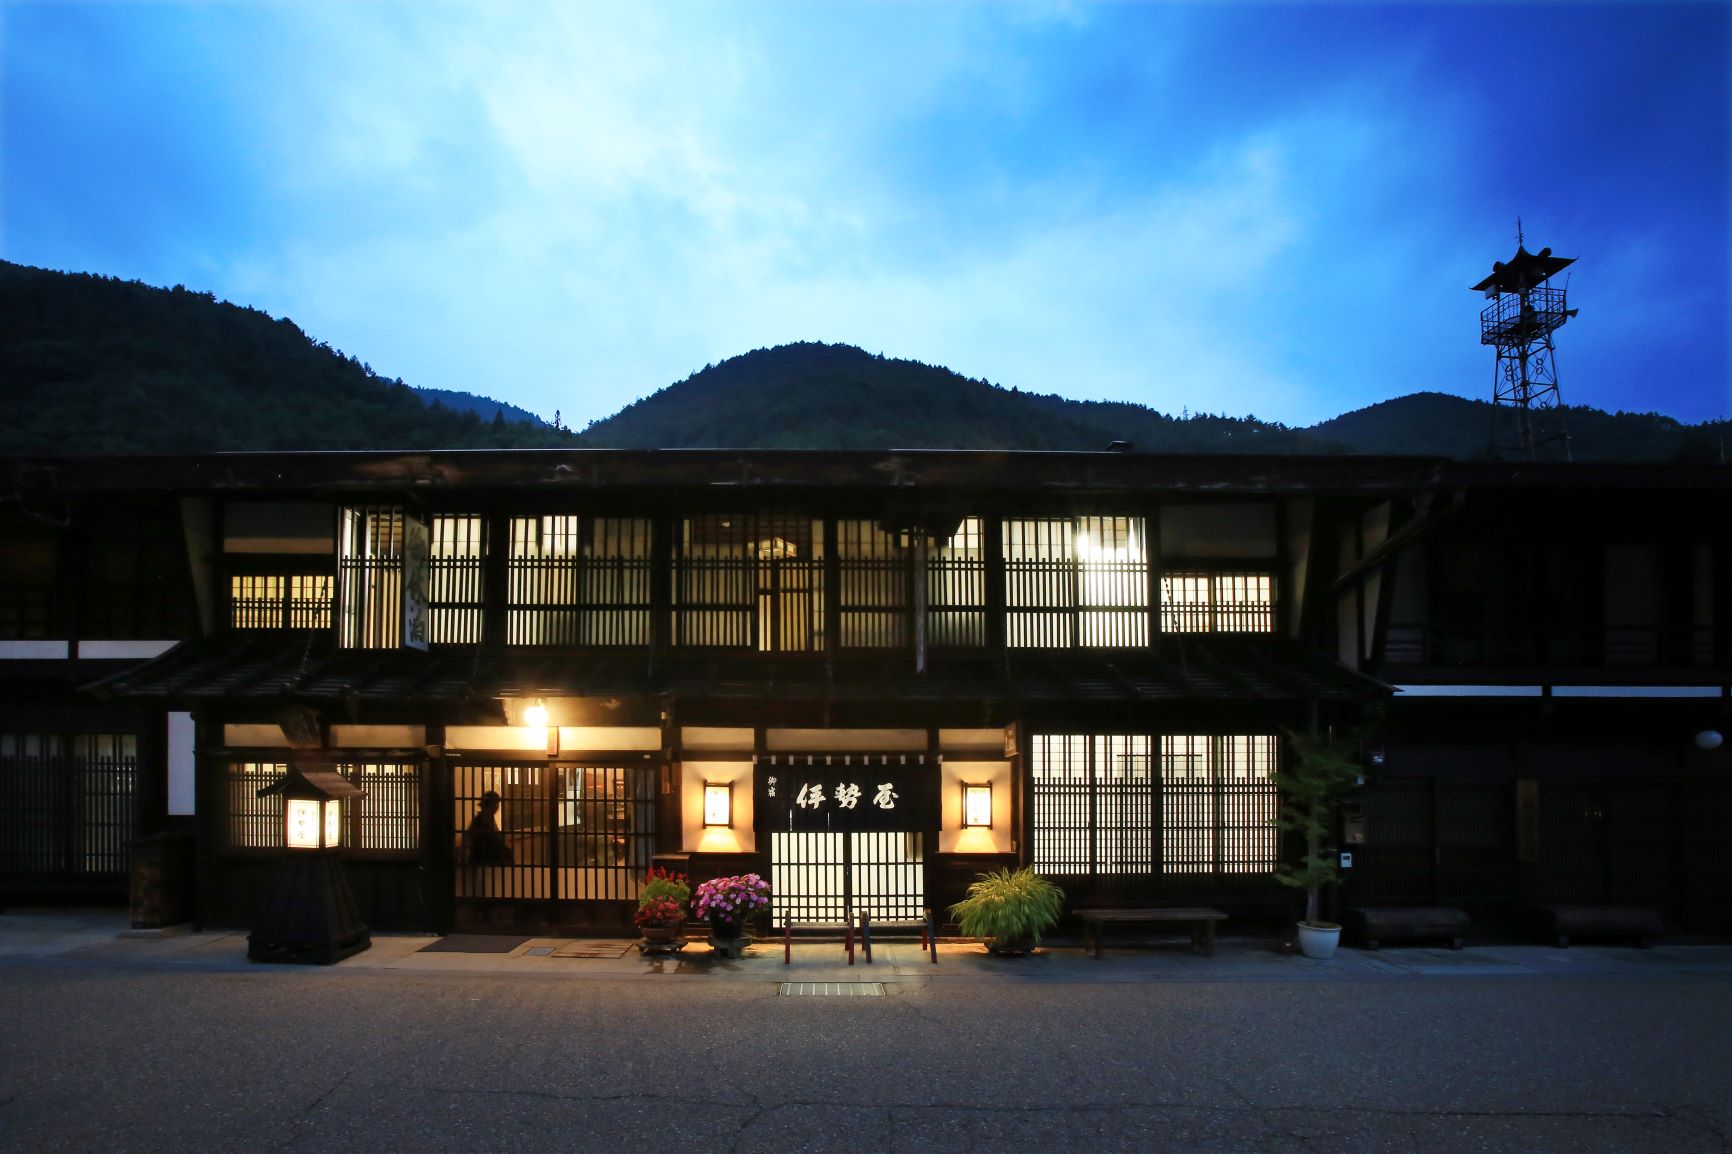 家族と木曽路の奈良井宿に一泊旅行へ。おすすめの宿を教えてください。